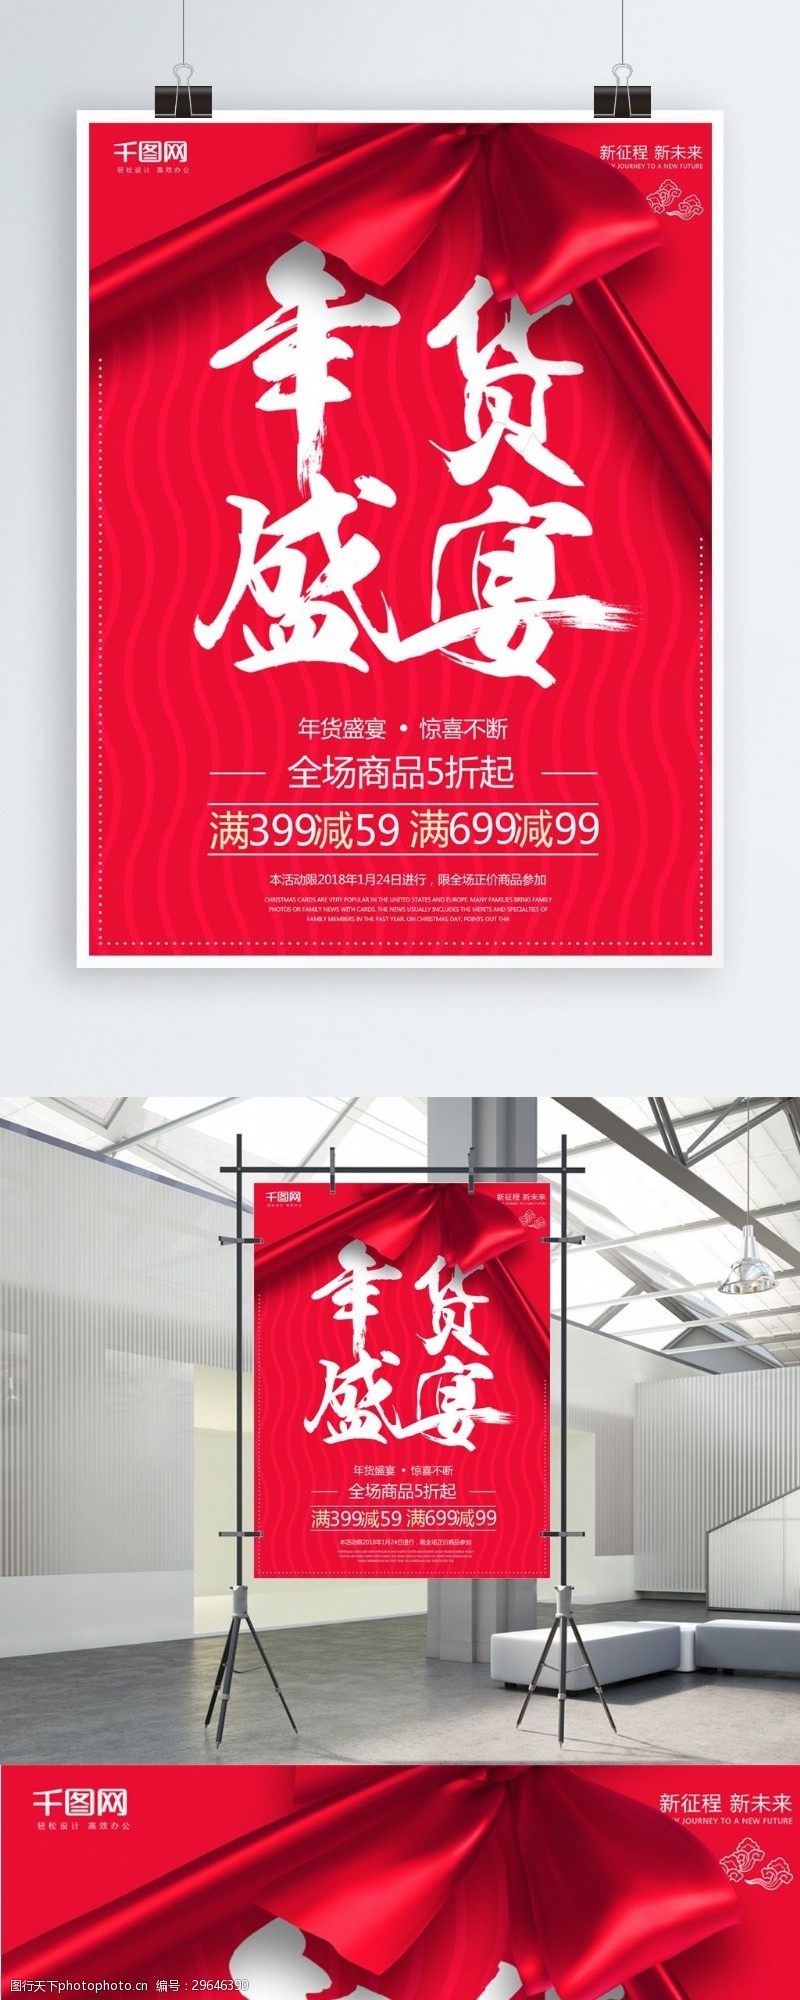 波浪彩带红色喜庆年货盛宴促销海报设计psd模板